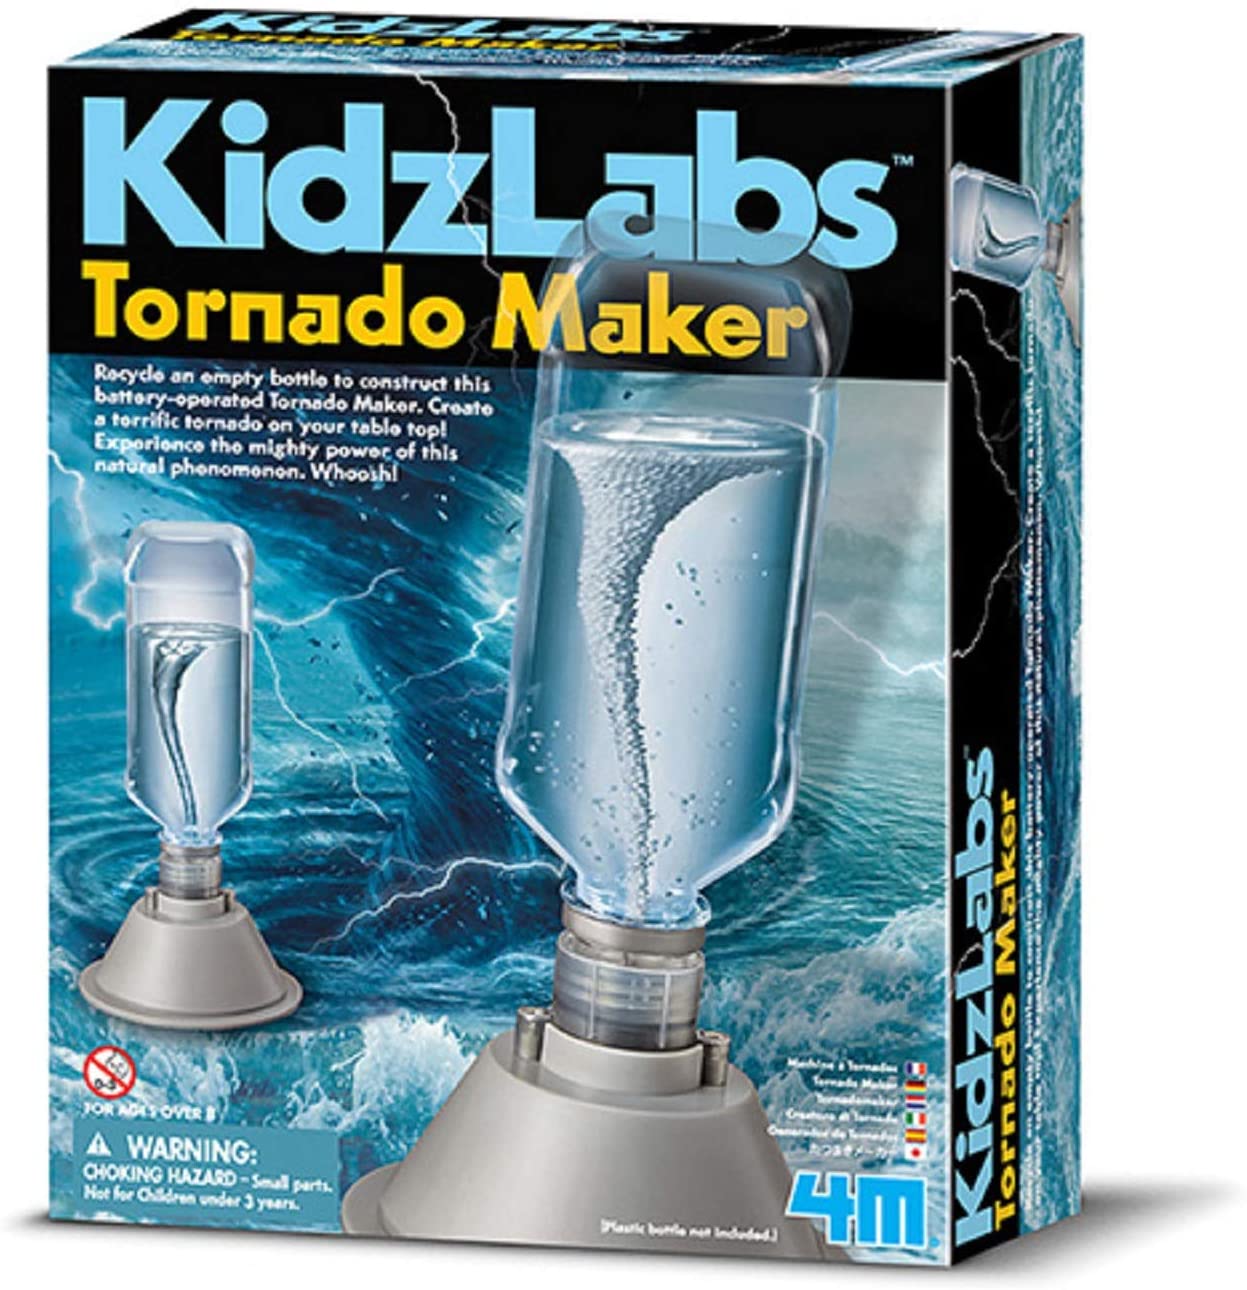 Kidzlabs: Tornado Maker - Ages 8+